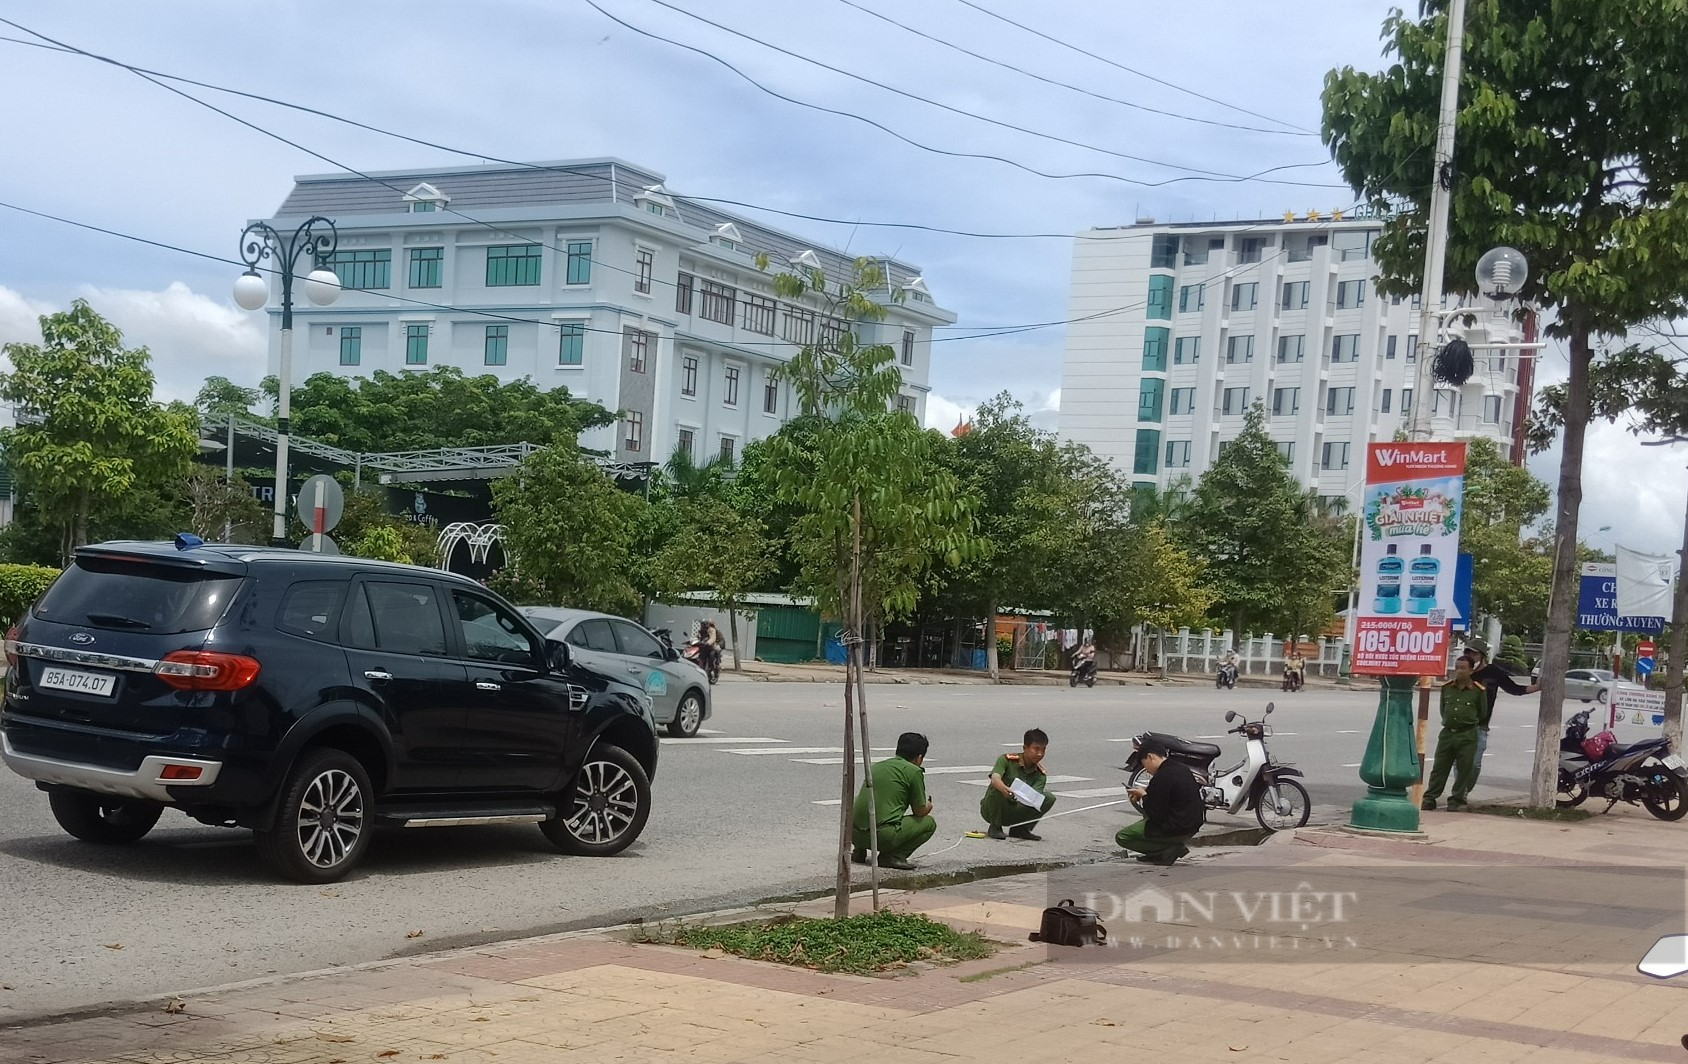 Cha nữ sinh xấu số ở Ninh Thuận xin lùi thời gian xét xử lái xe Hoàng Văn Minh  - Ảnh 4.